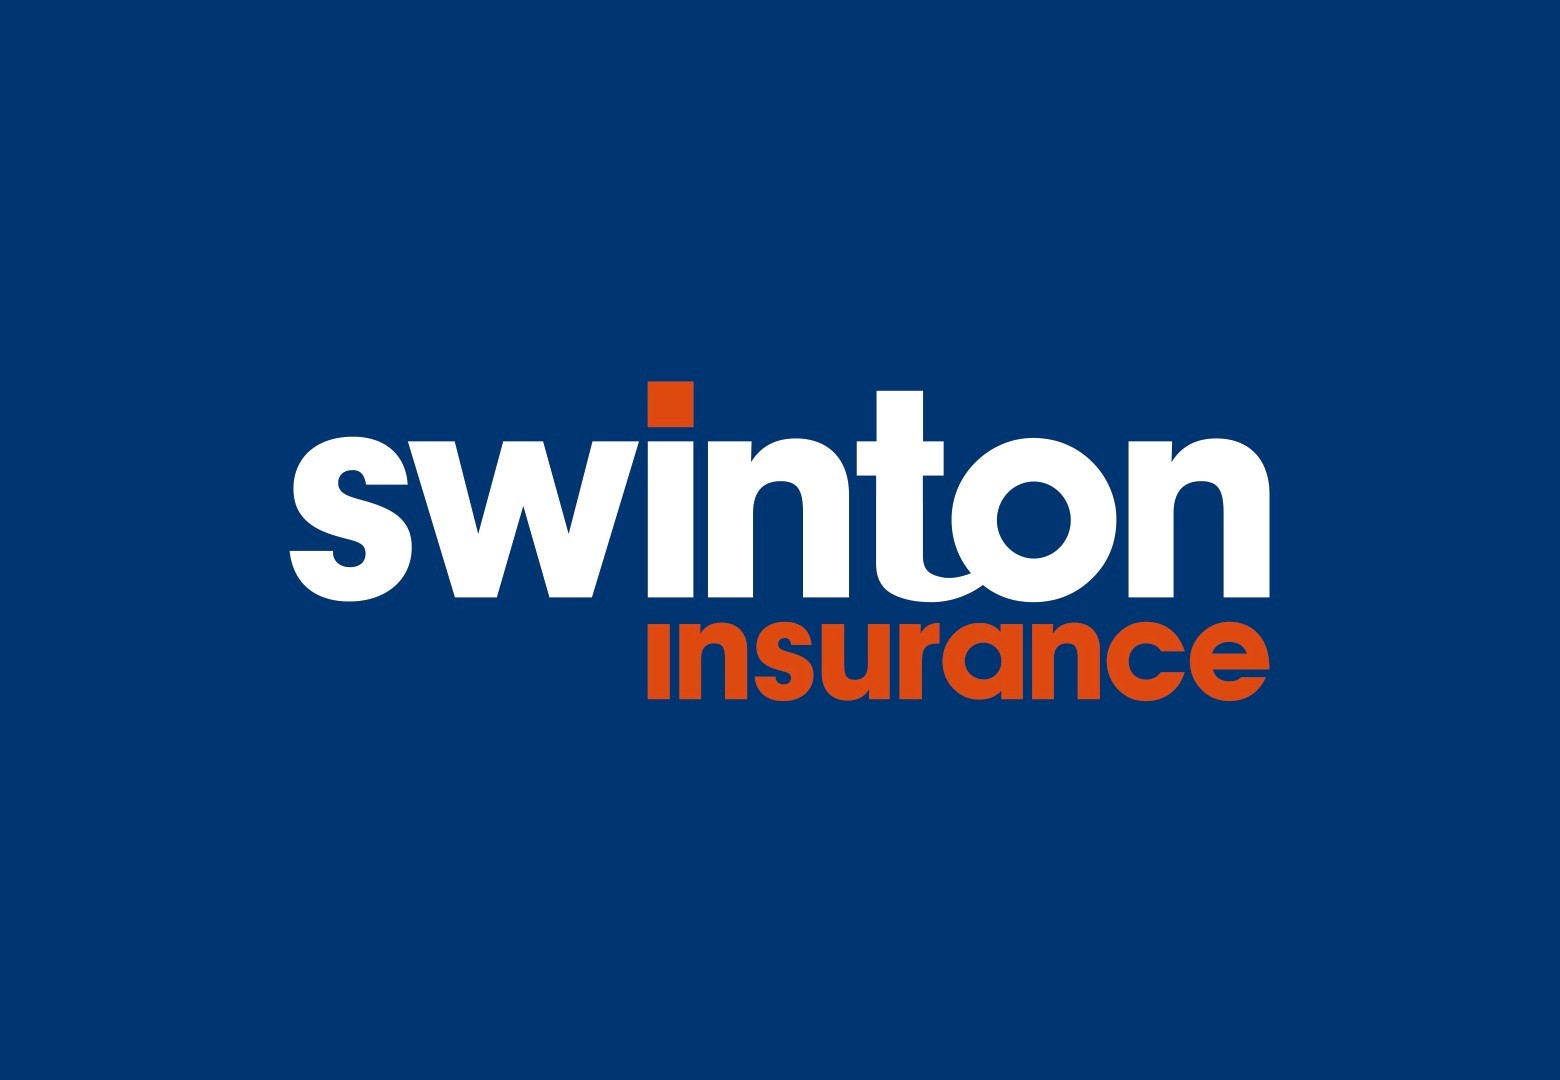 Swinton Insurance logo.